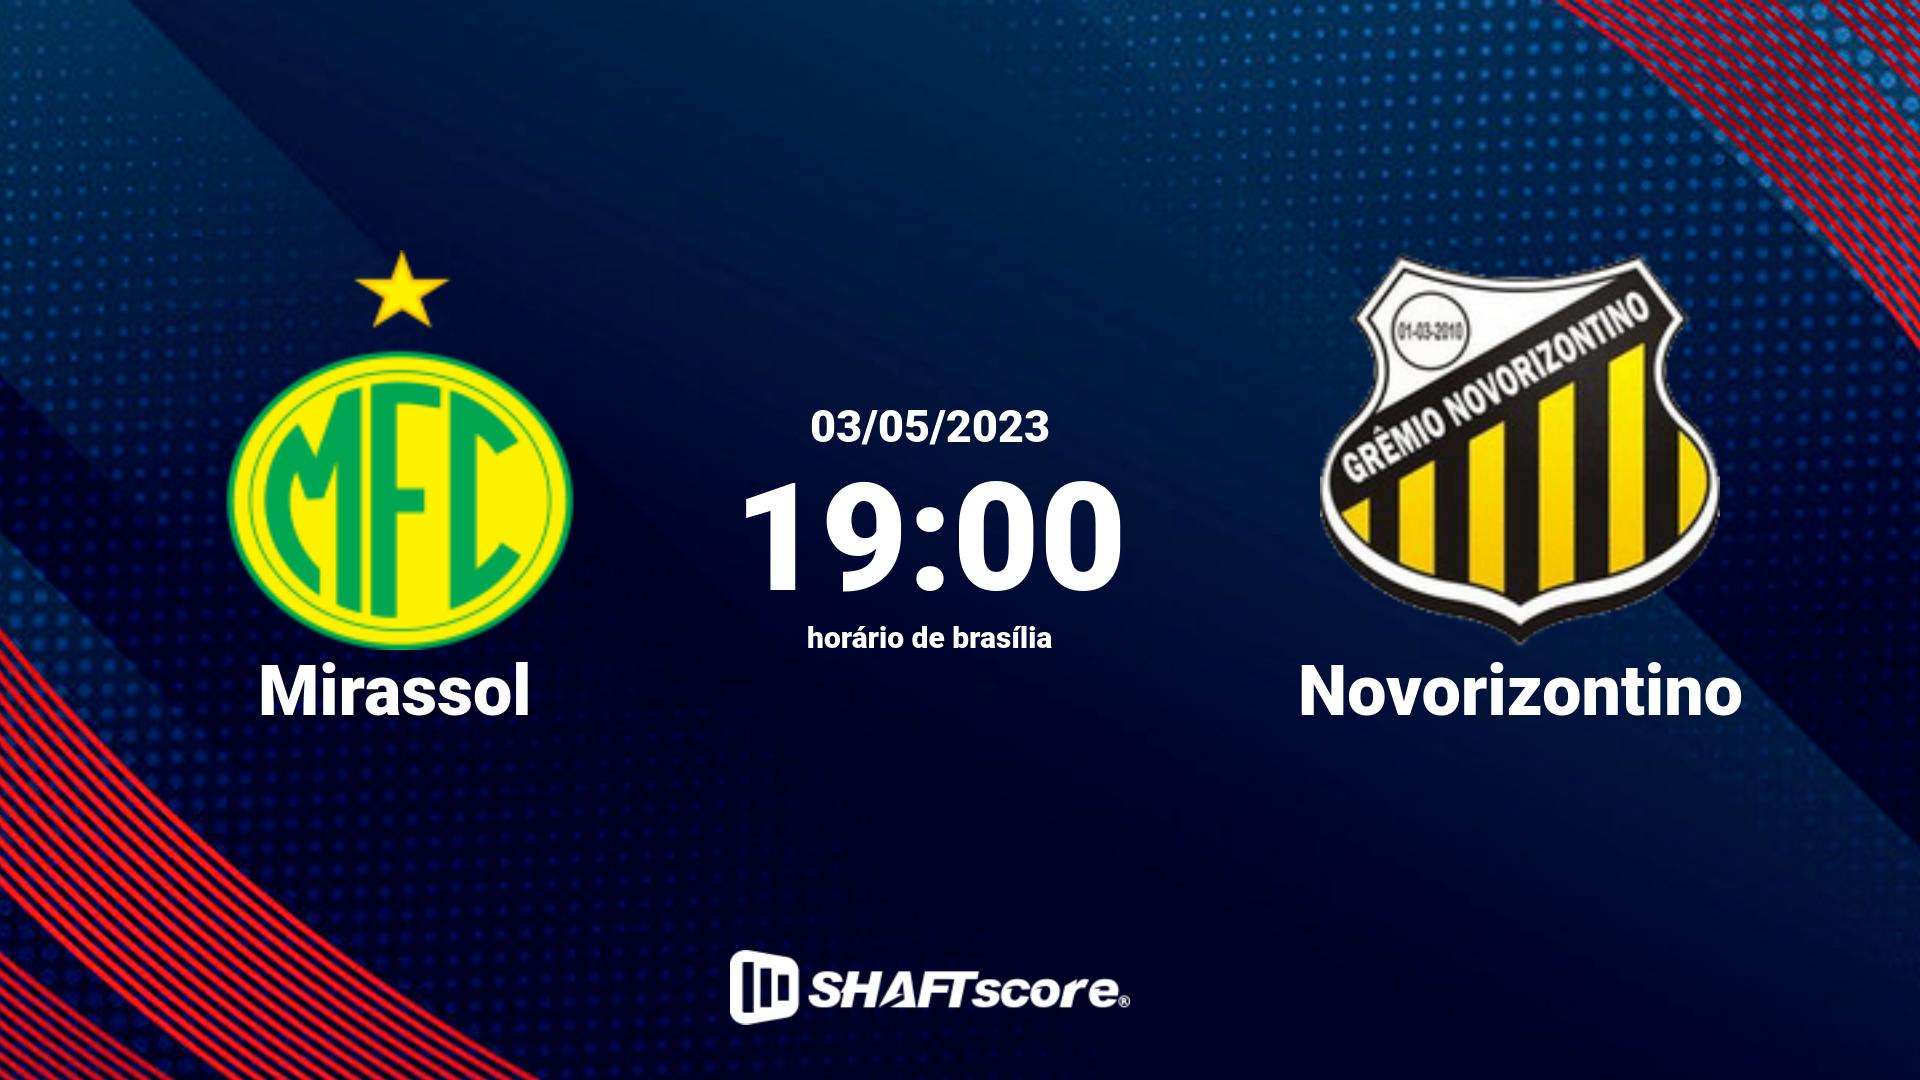 Estatísticas do jogo Mirassol vs Novorizontino 03.05 19:00